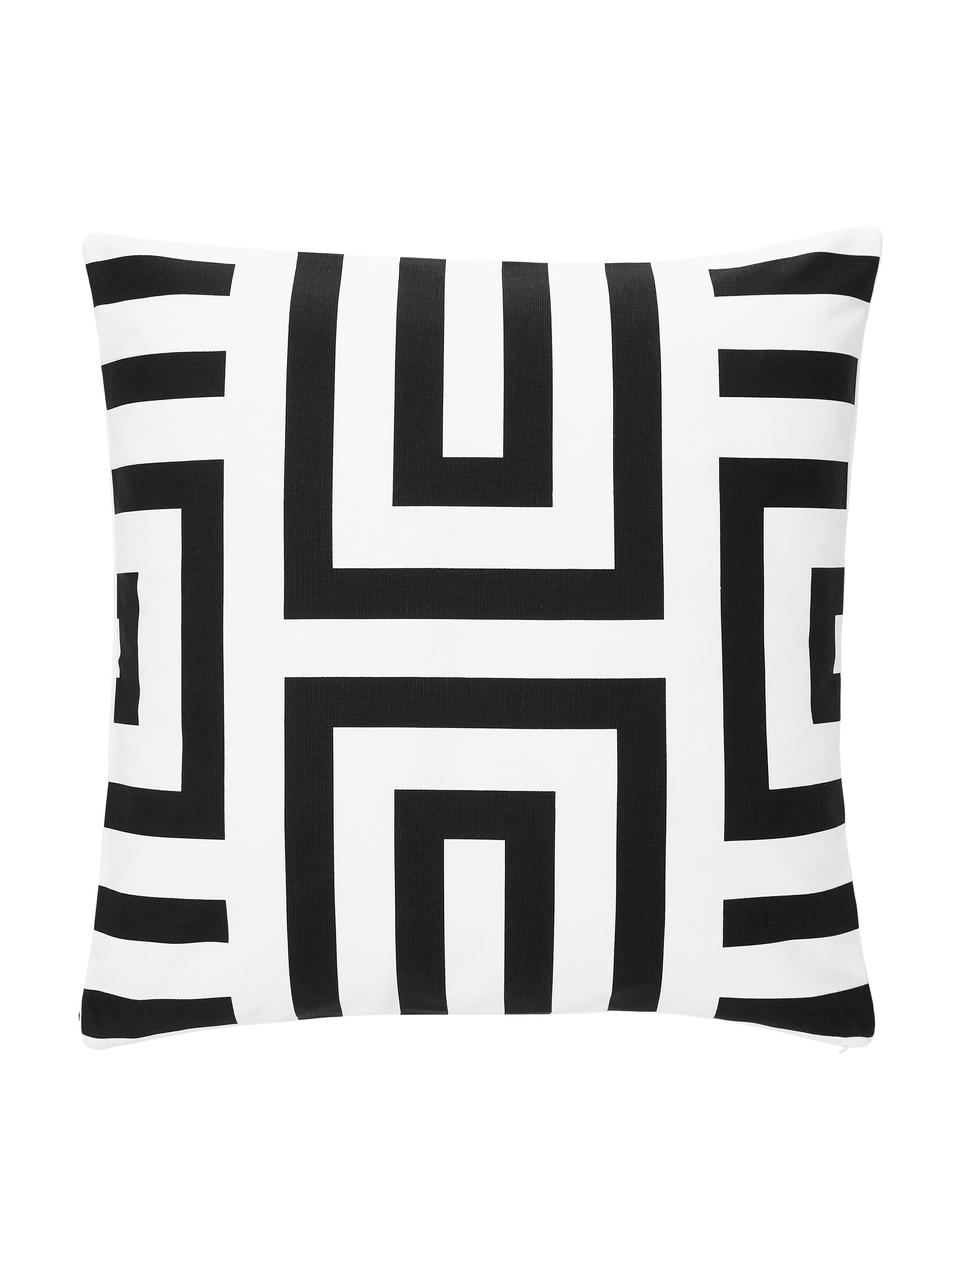 Poszewka na poduszkę z bawełny  Bram, 100% bawełna, Biały, czarny, S 45 x D 45 cm